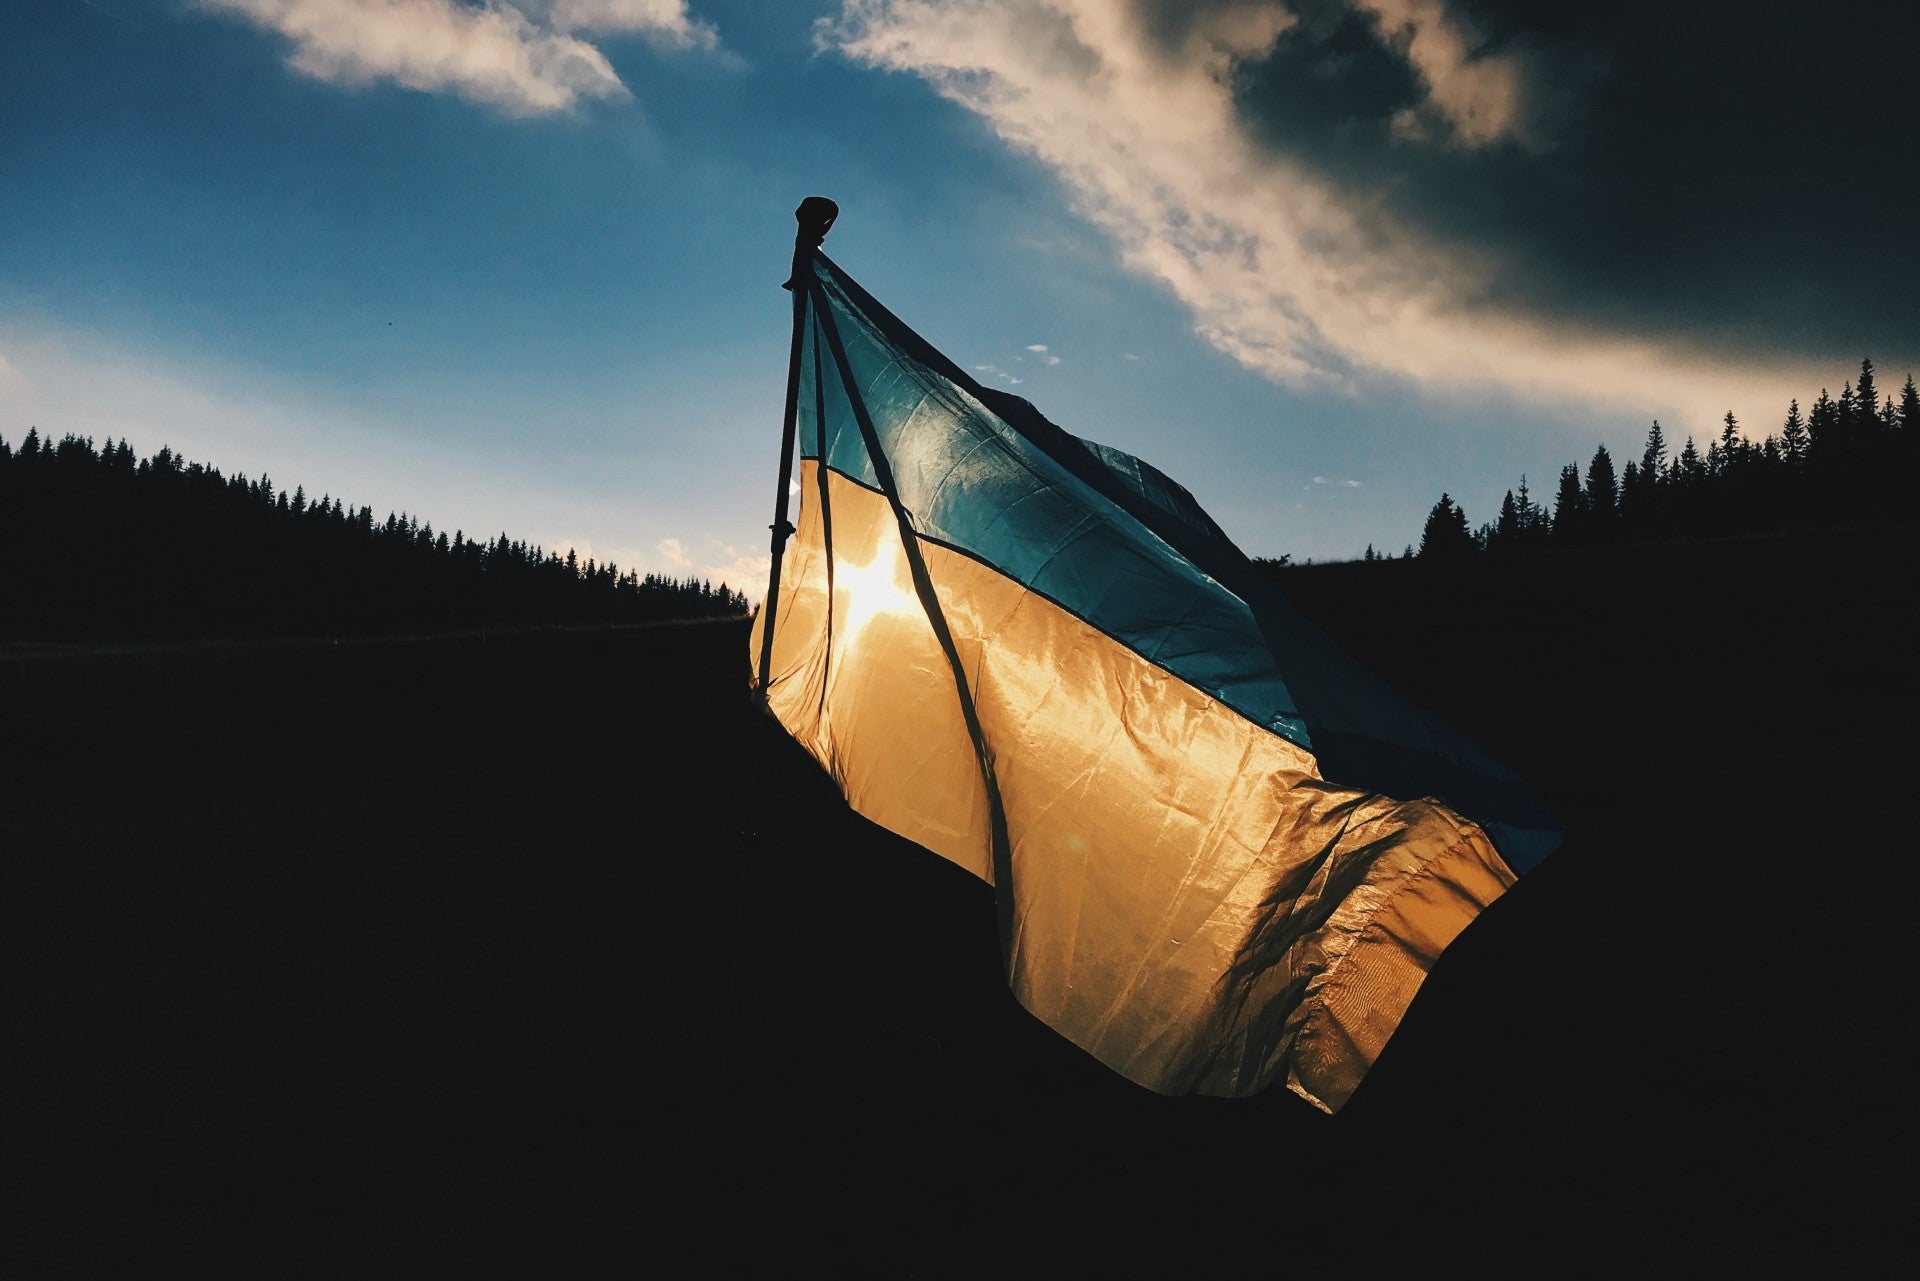 Oekraiense vlag